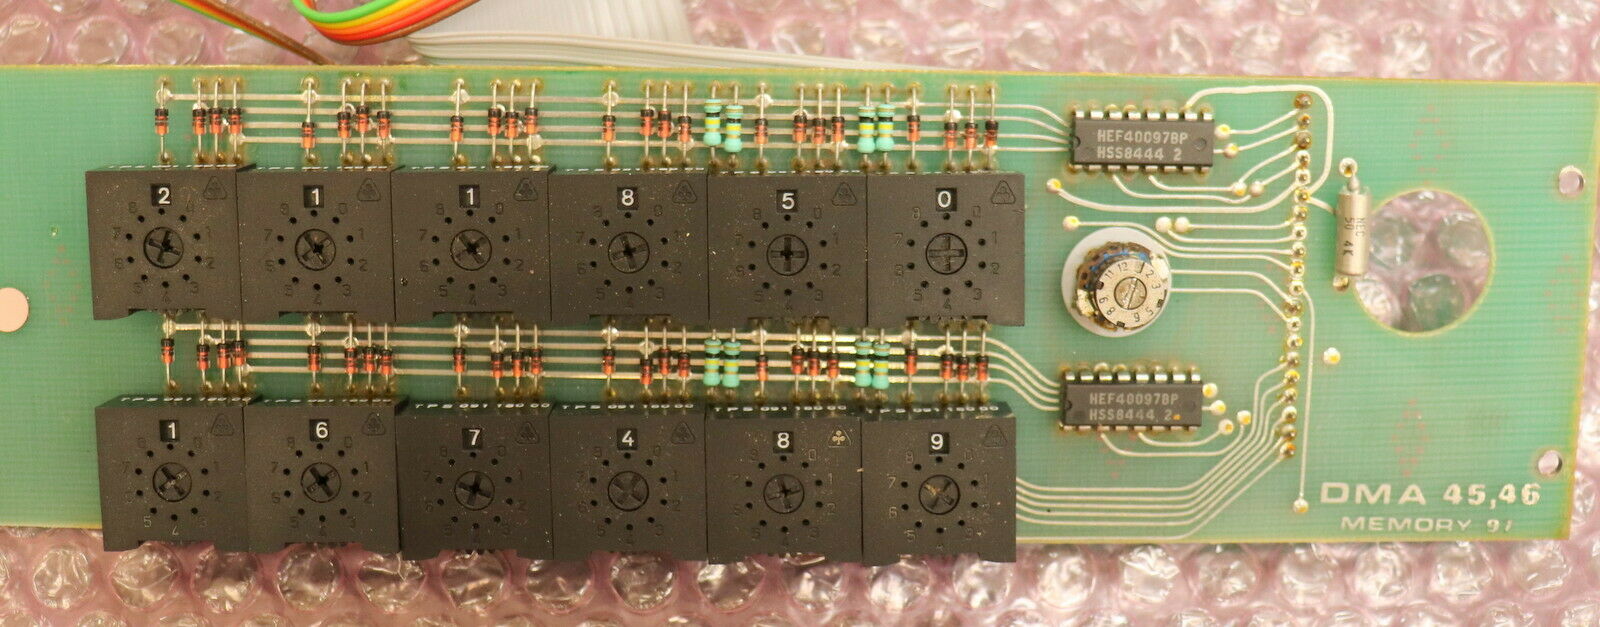 ANTON PAAR Memory 97 für Digitalen Dichtemesser DMA 45 / 46 - gebraucht